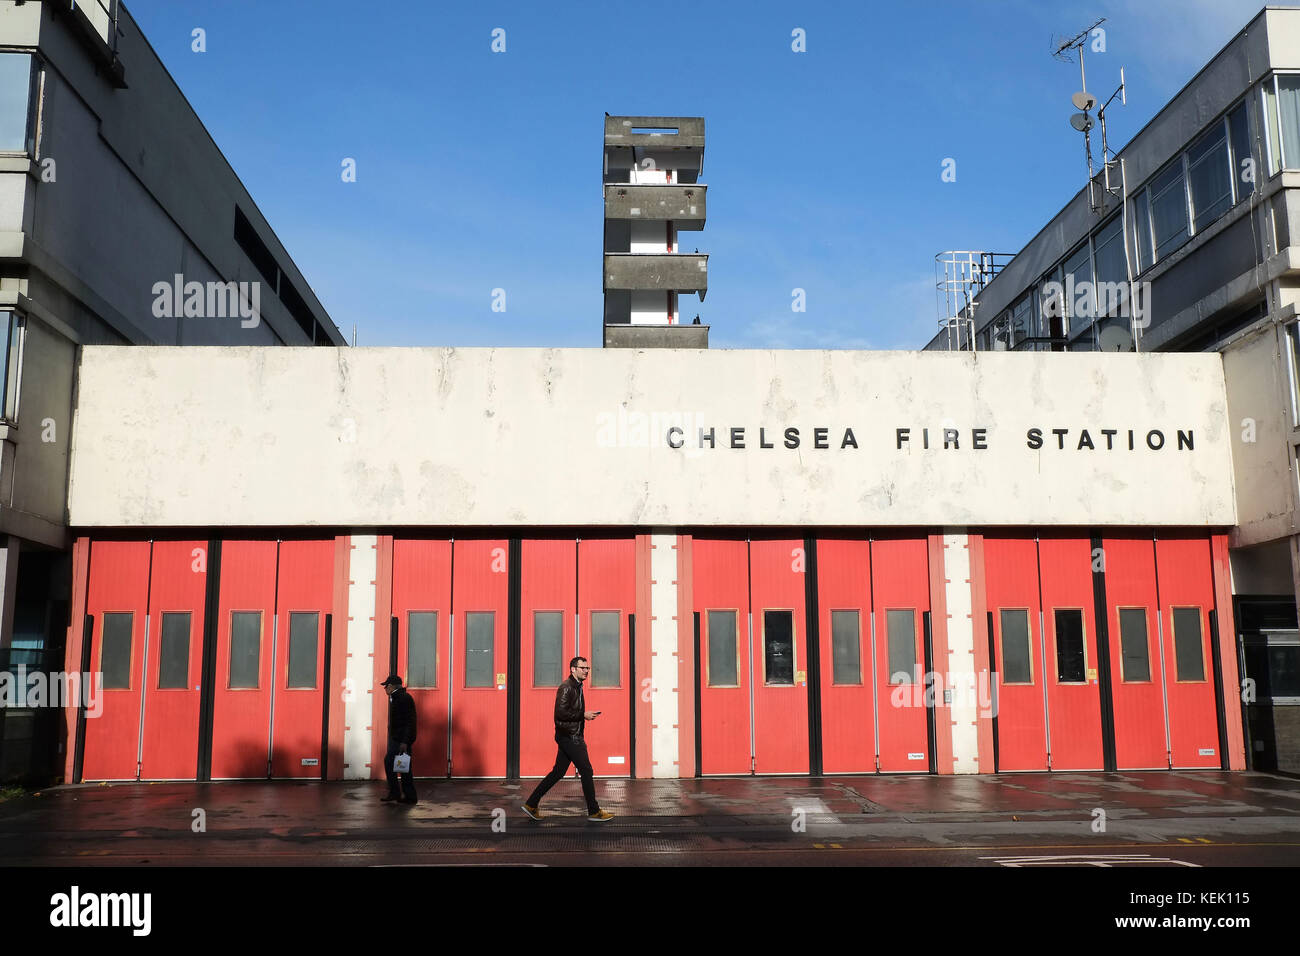 Chelsea Fire Station 264 Kings Road Londres. La station a été ouverte le 3 mars 1965 la chanteuse Adele a montré son soutien aux pompiers en visite Banque D'Images